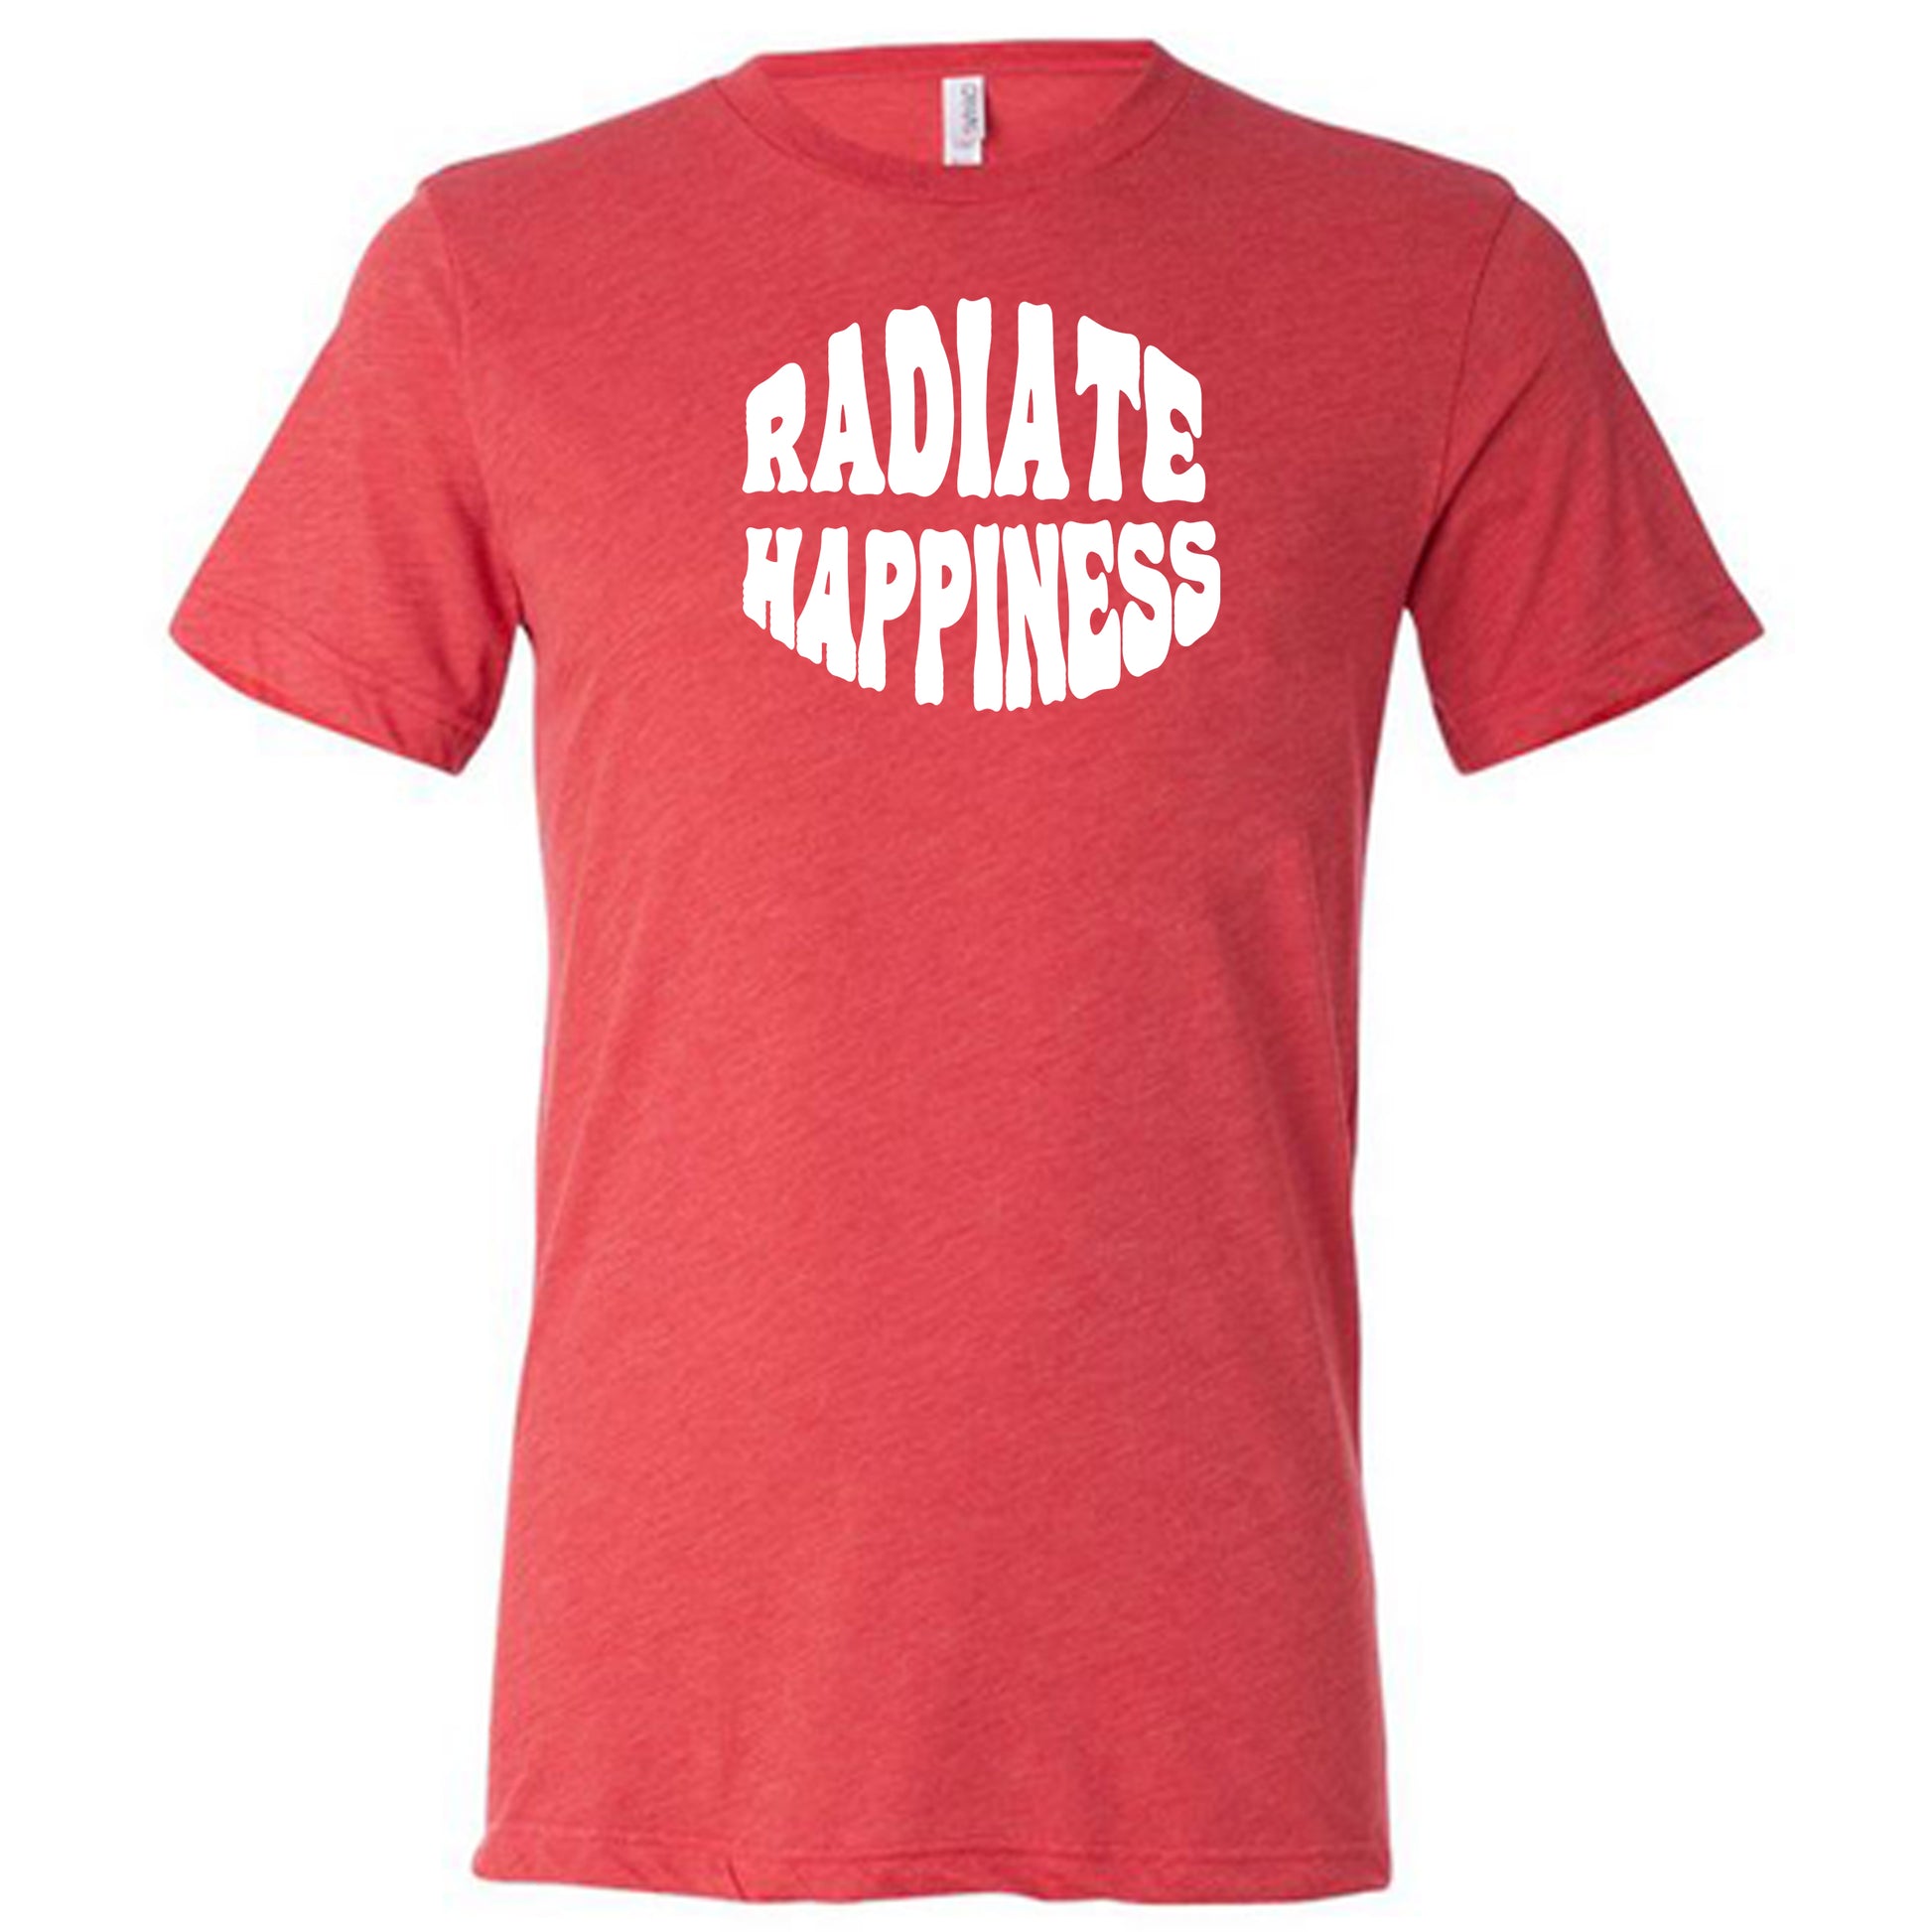 radiate happiness red shirt